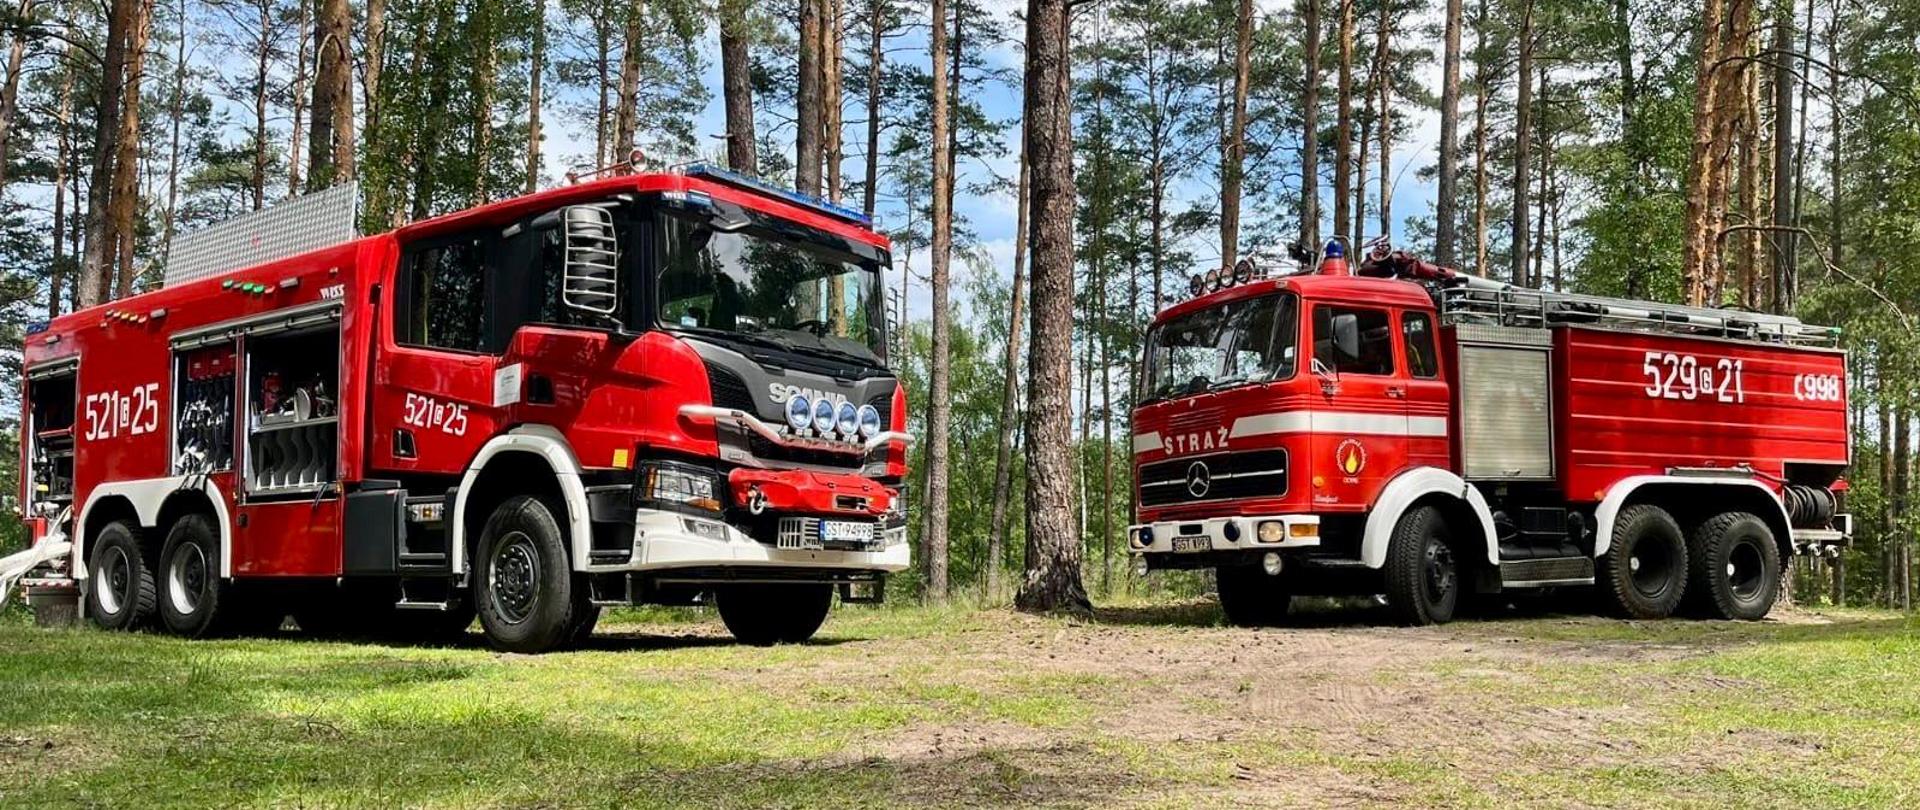 Dwa ciężkie samochody pożarnicze na tle lasu